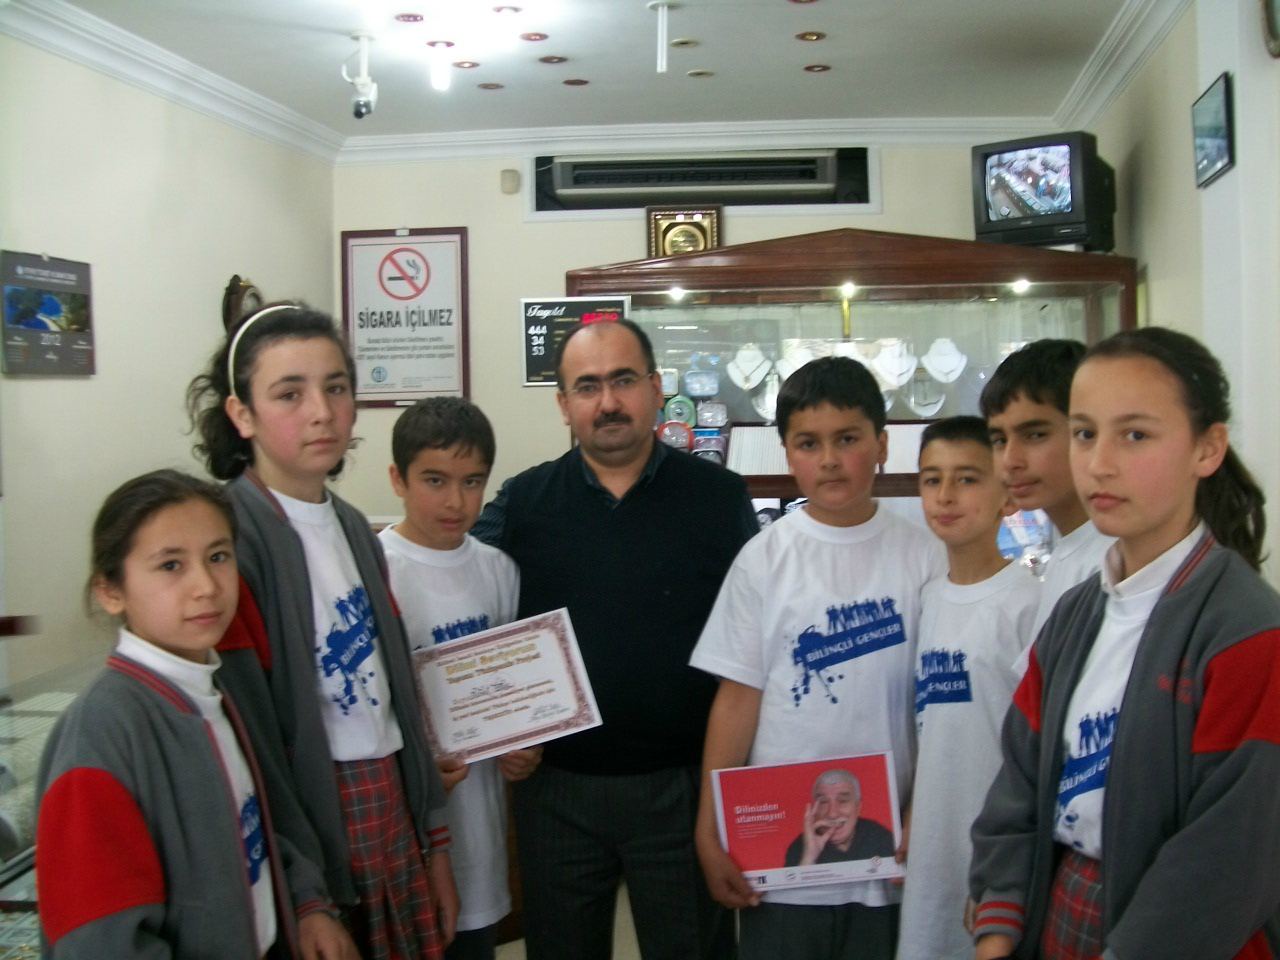 Bilinçli Gençler Derneği - Türkiye Bilinçli Gençlik Projesi - "DİLİMİ SEVİYORUM, TÜRKÇE KULLANIYORUM" - Eldirek İsmail Sarıkaya İlköğretim Okulu - MUĞLA